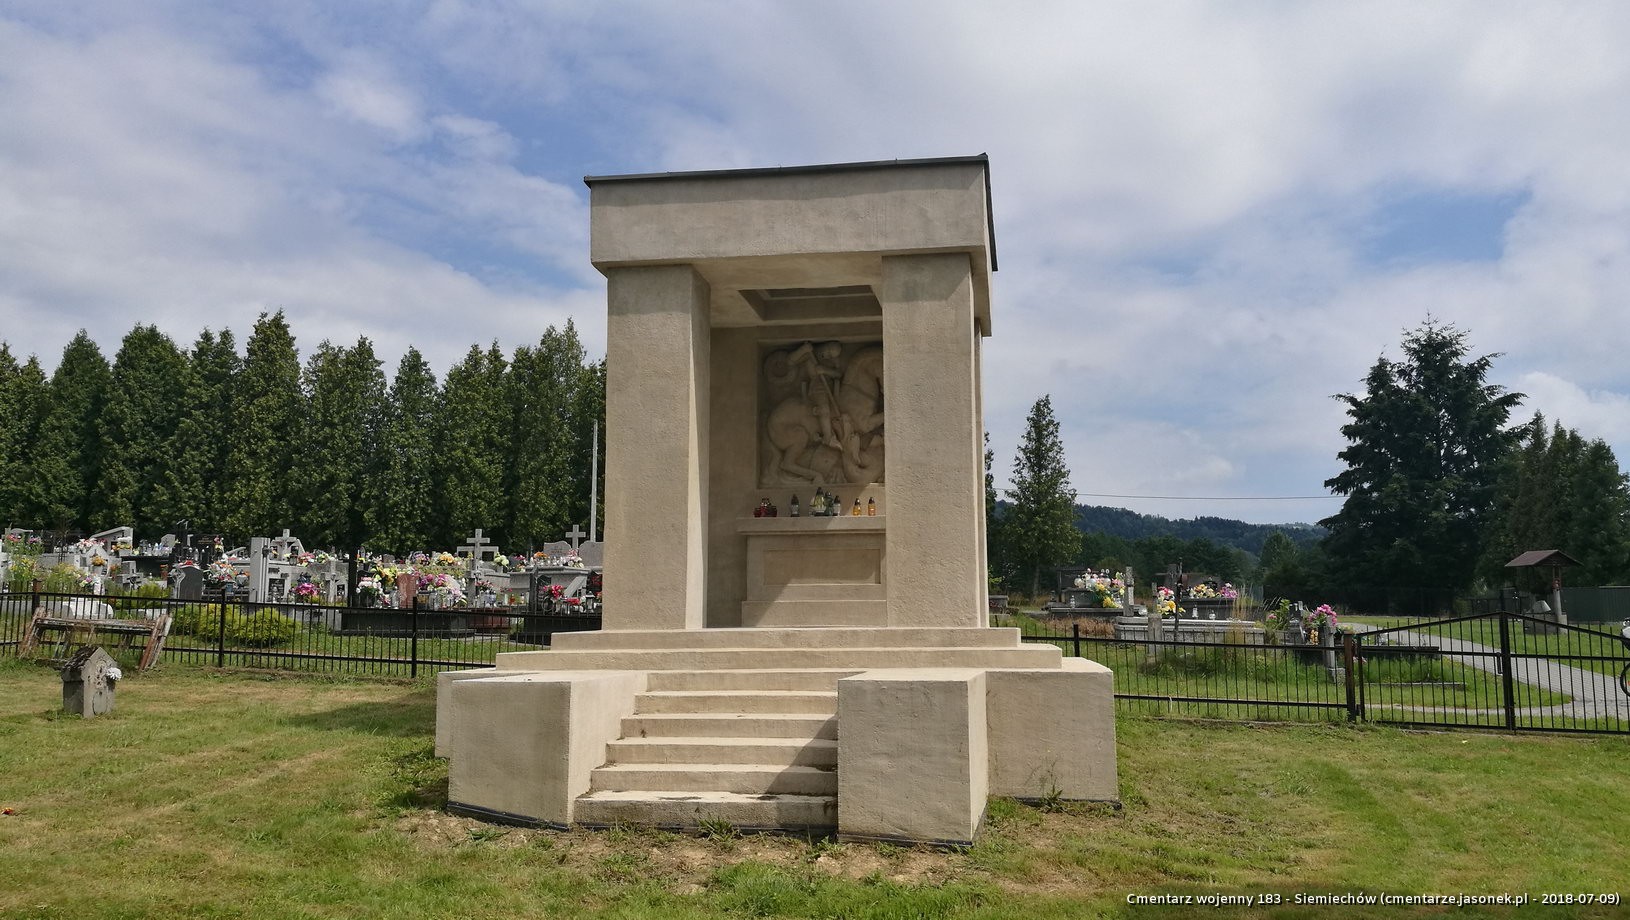 Cmentarz wojenny 183 - Siemiechów